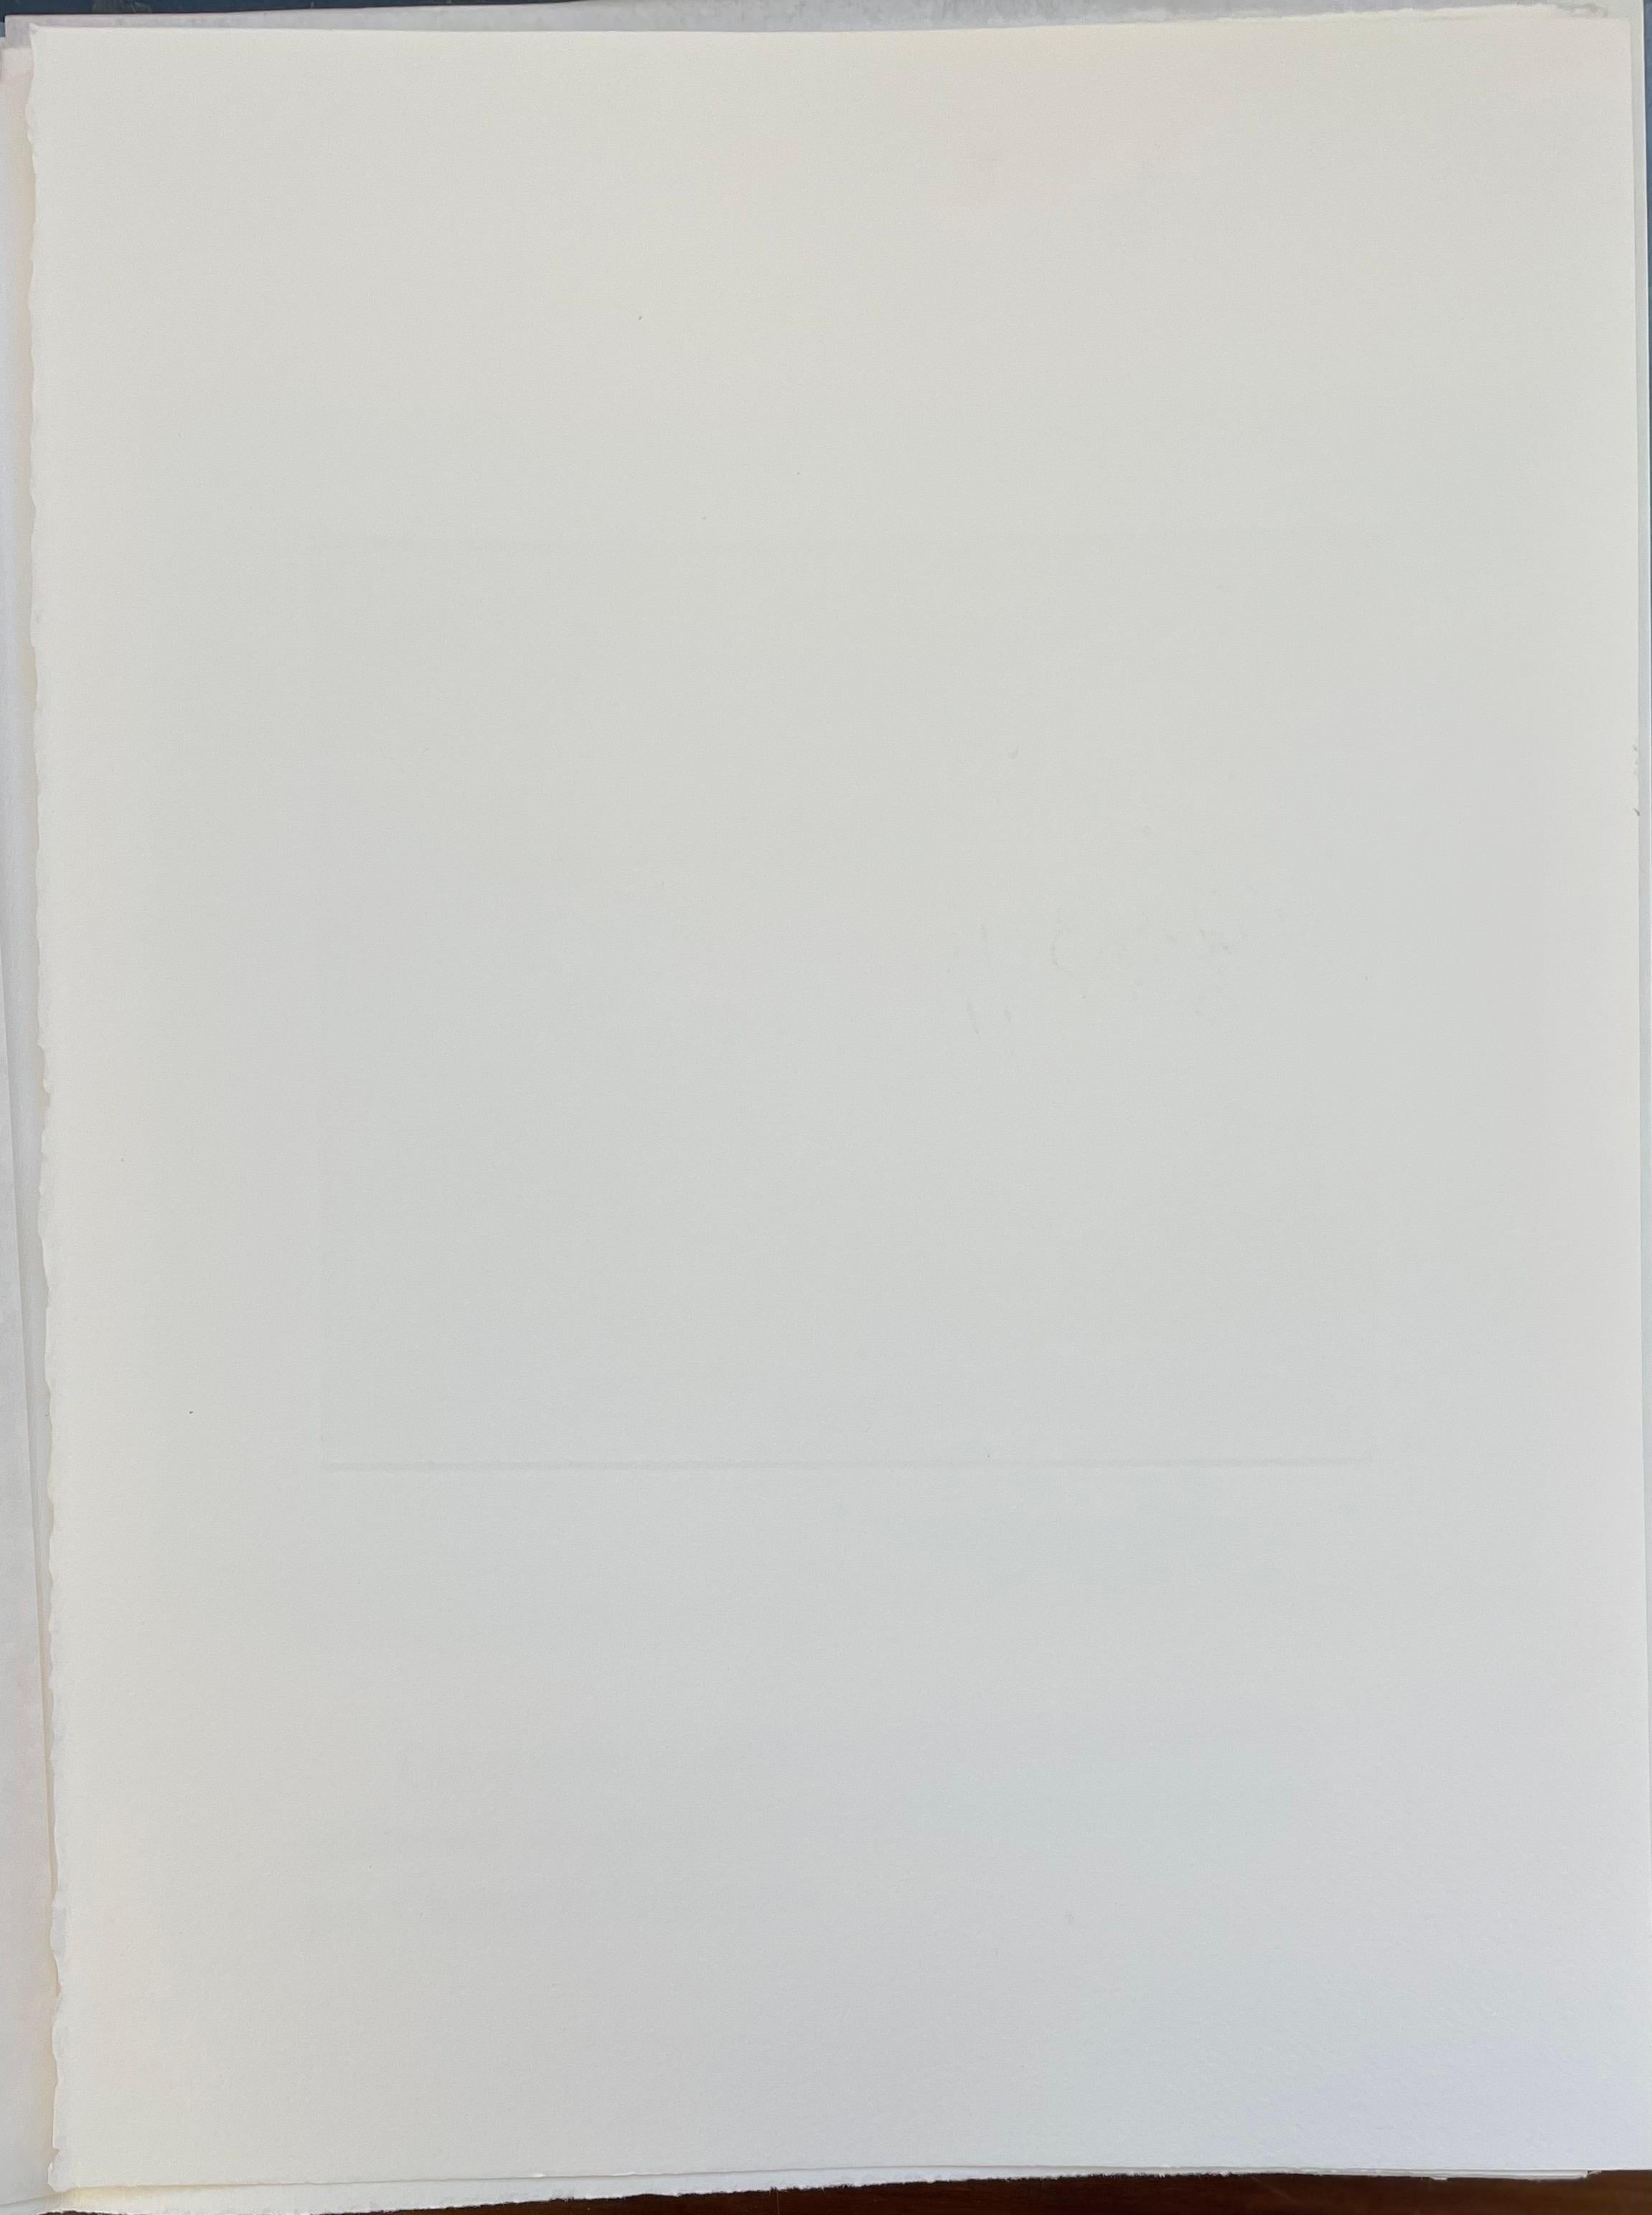 François-Xavier Lalanne (1927-2008) Cheval et sanglier, 2005 
Techniques : aquatinte et vernis mou sur papier, signé au crayon par François Xavier Lalanne, en parfait état. 
Dimensions du papier : 38 x 28 cm (14,96 x 11 inches) 
Dimensions du tirage